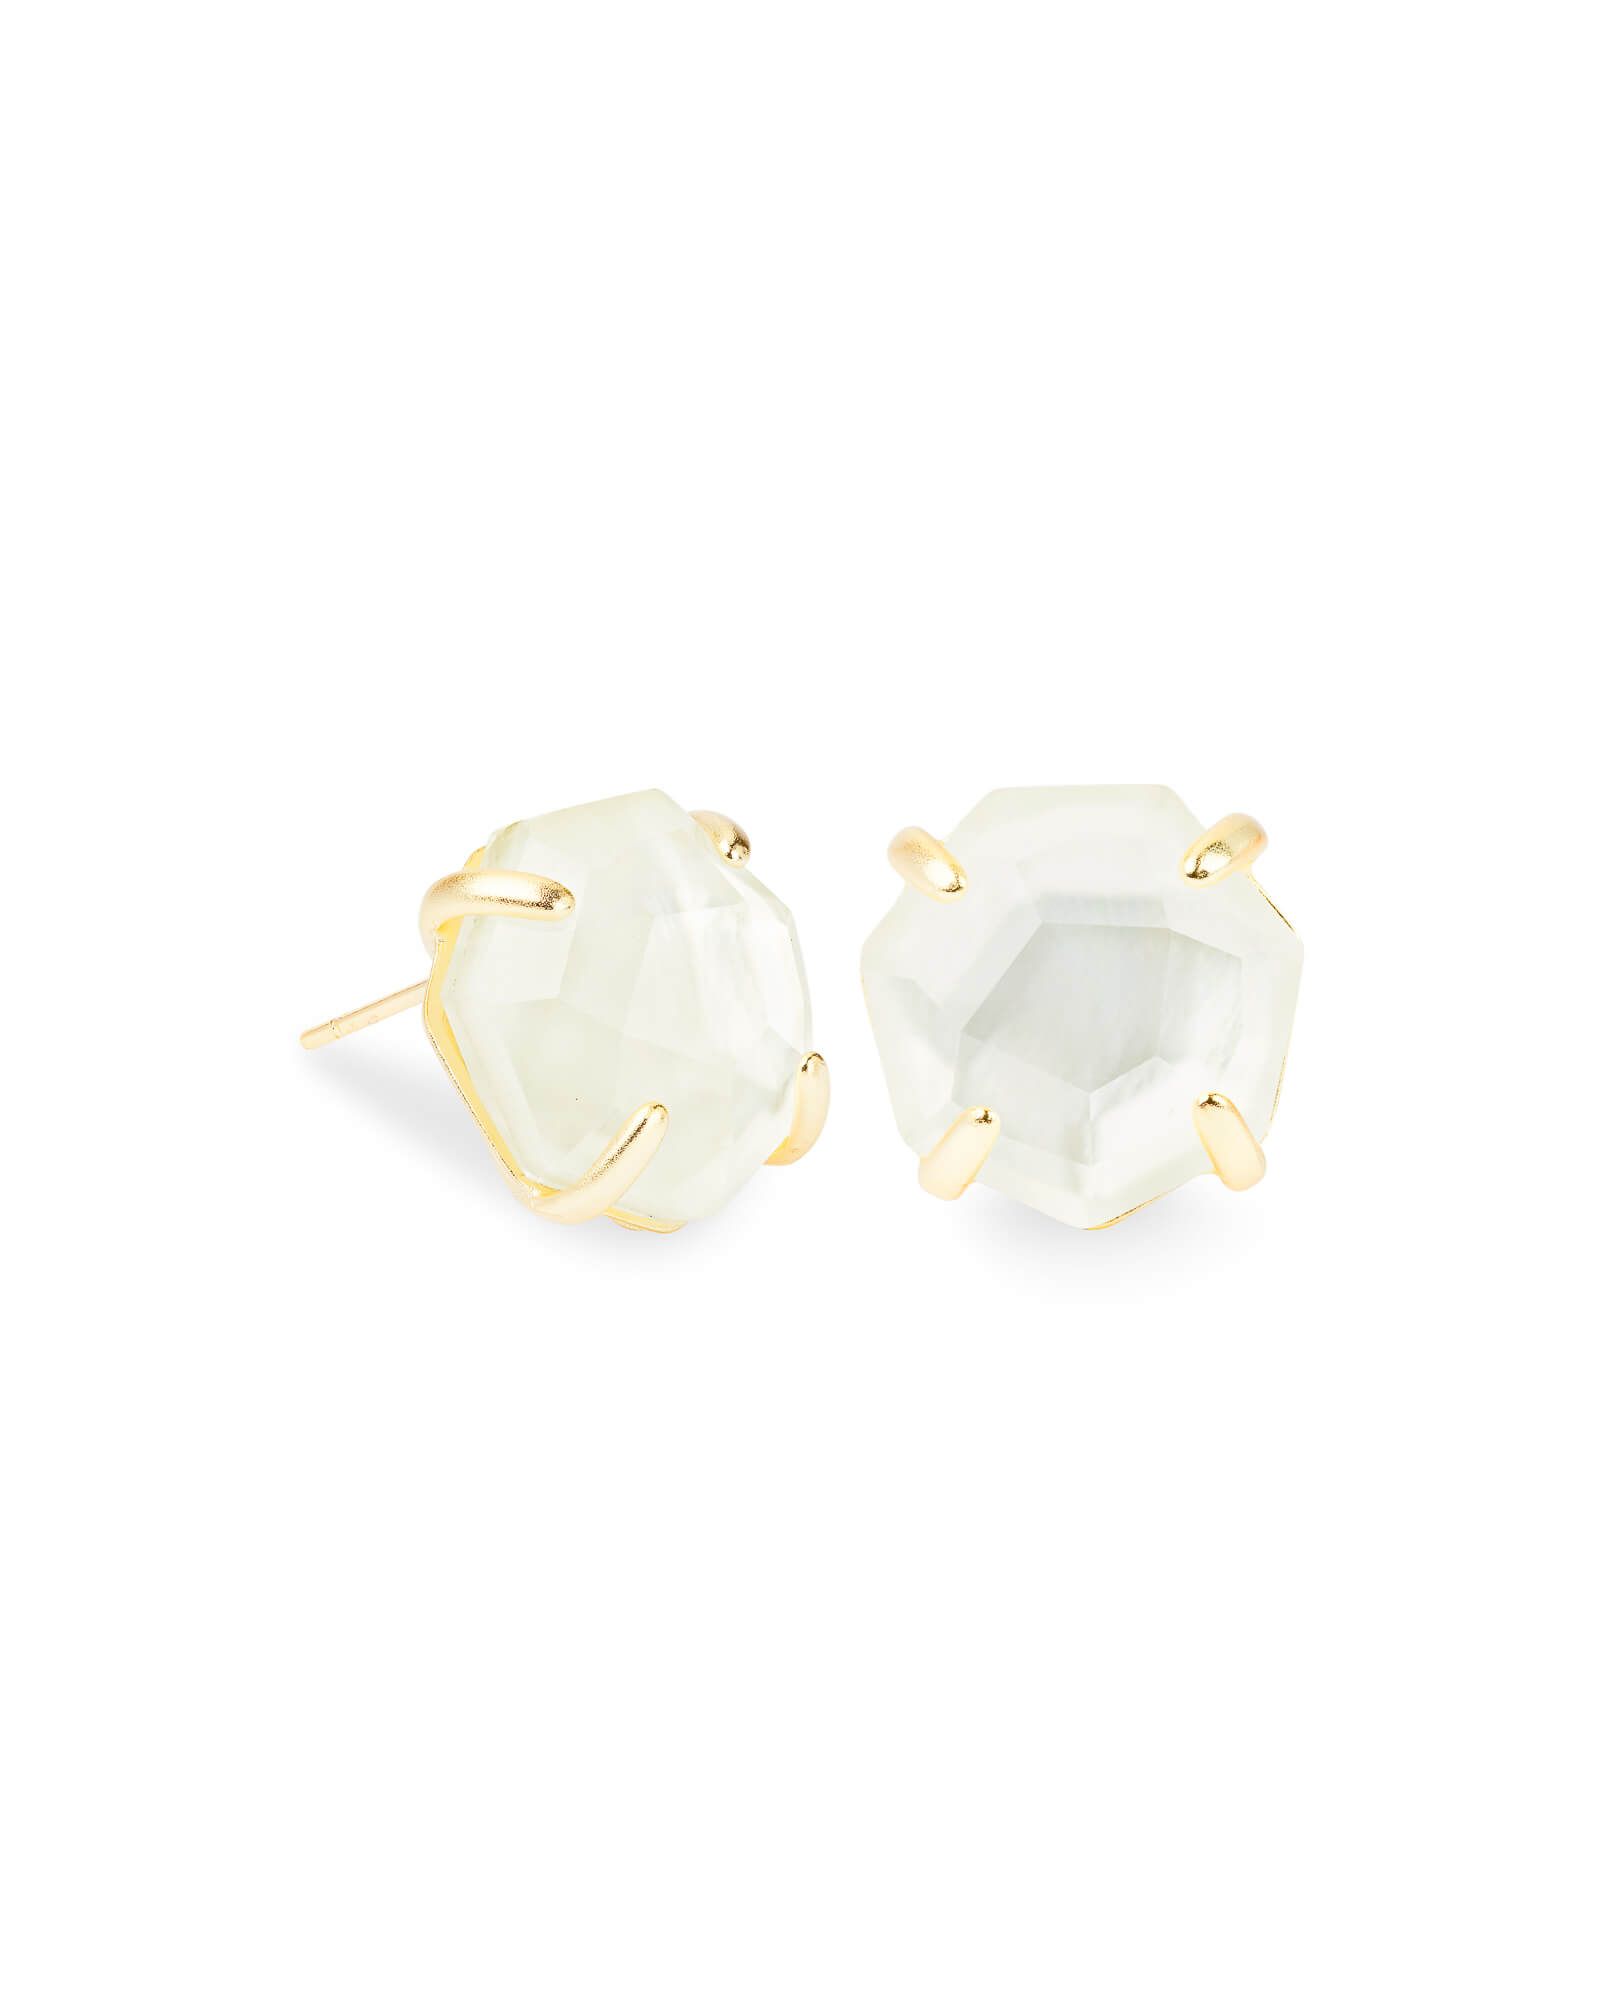 Ryan Gold Stud Earrings in Ivory Mother-of-Pearl | Kendra Scott | Kendra Scott